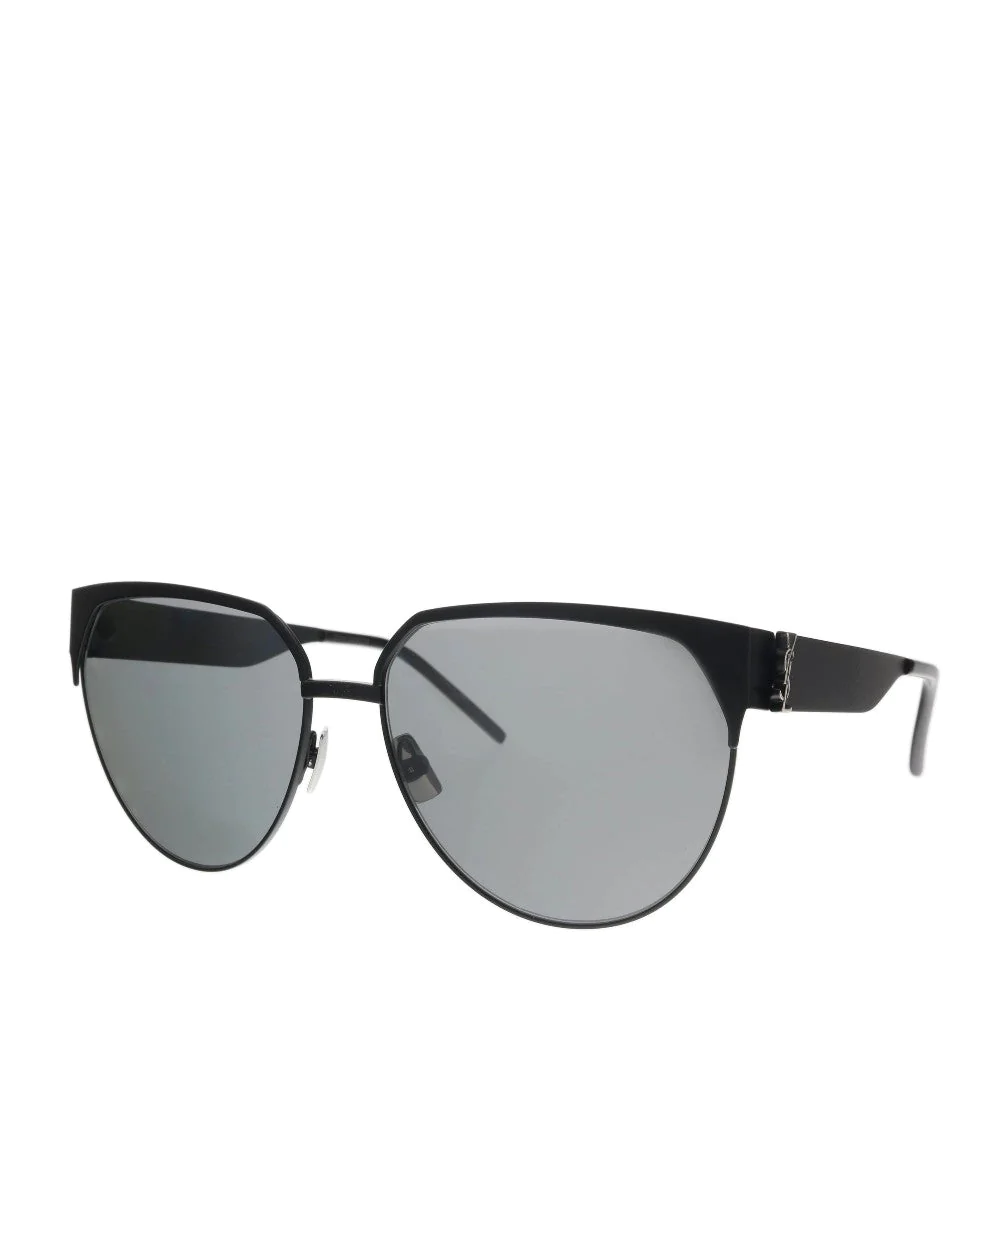 Saint Laurent SL M43/F 002 Round Sunglasses